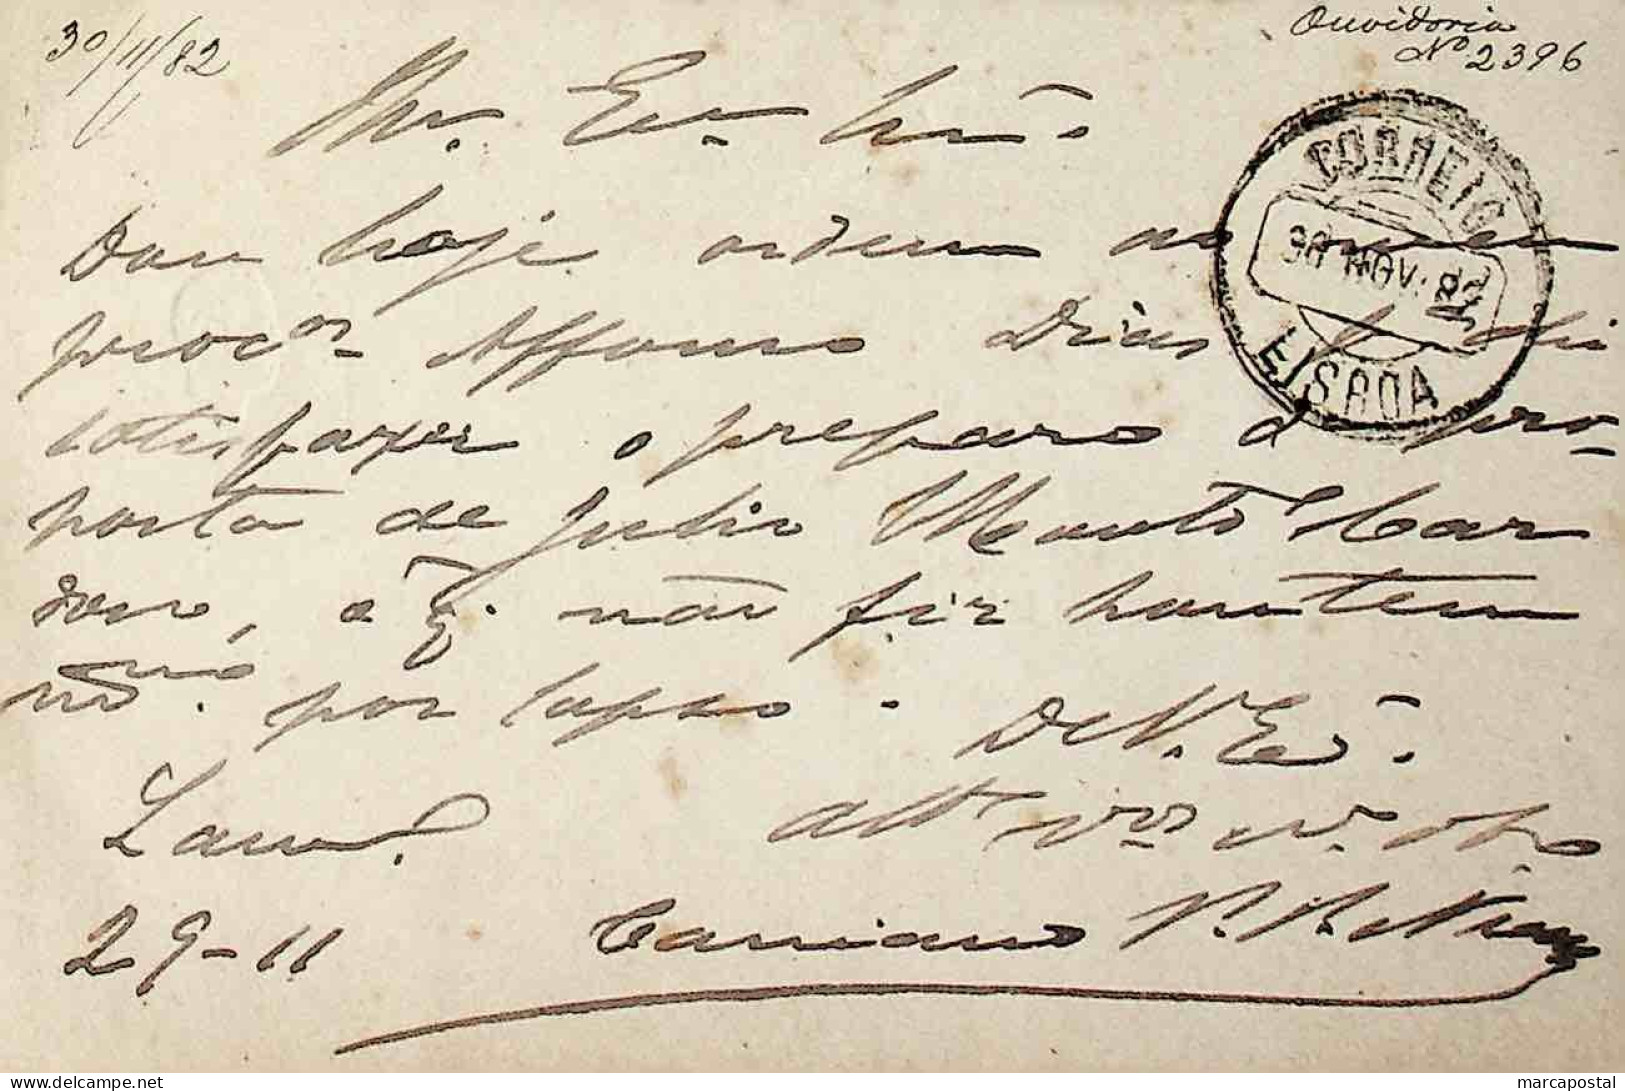 1882 Portugal Bilhete Postal Inteiro  D. Luís Fita Direita 10 R. Castanho-Vermelho Enviado De Lamego (?) Para Lisboa - Enteros Postales